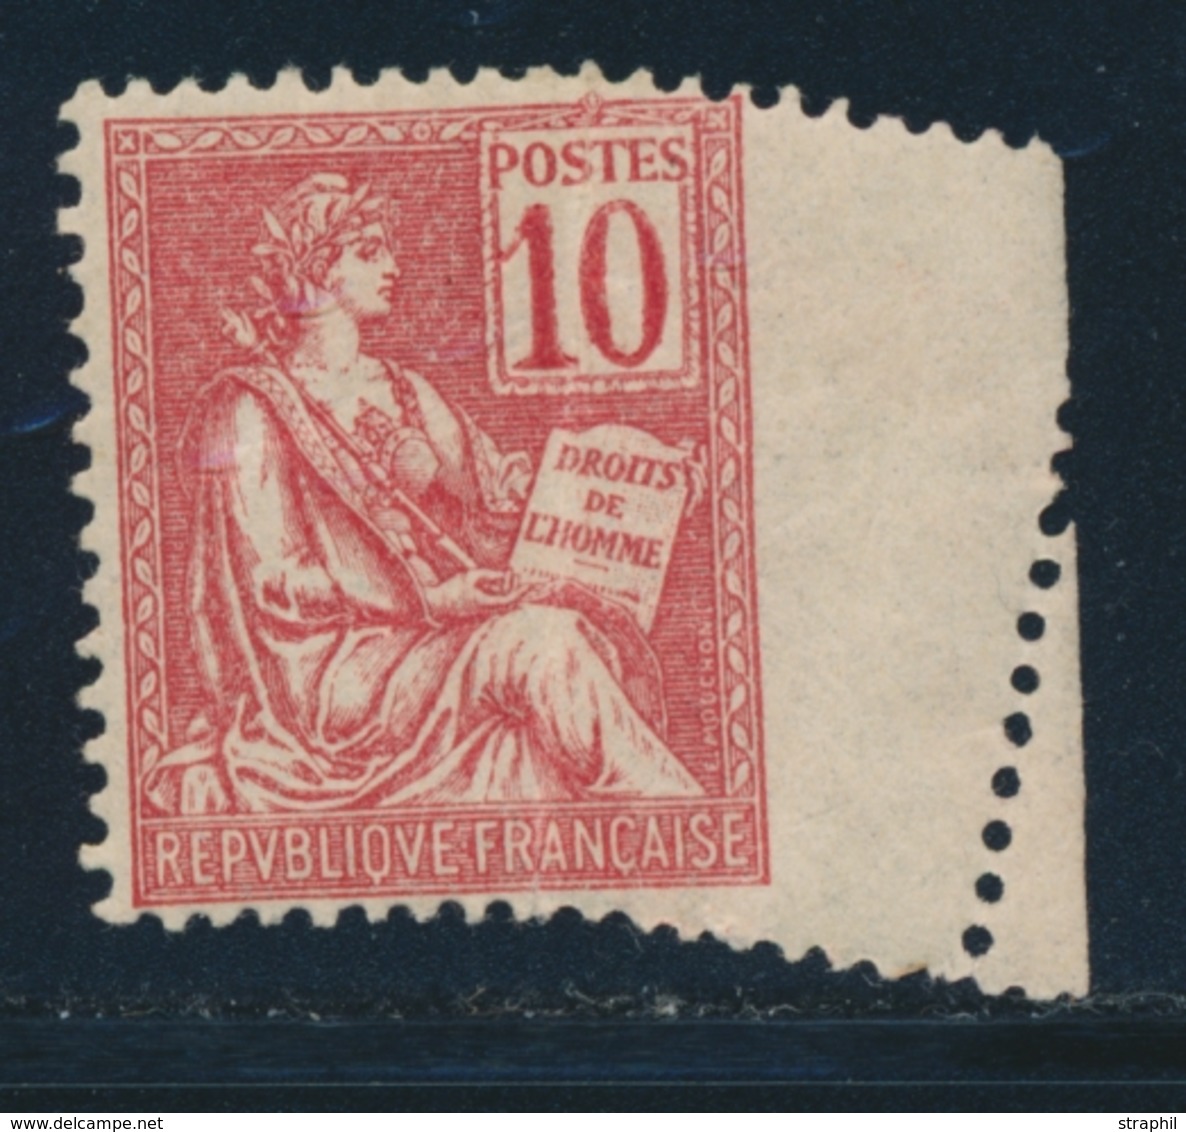 * N°116 - Piquage Oblique - TB - Unused Stamps